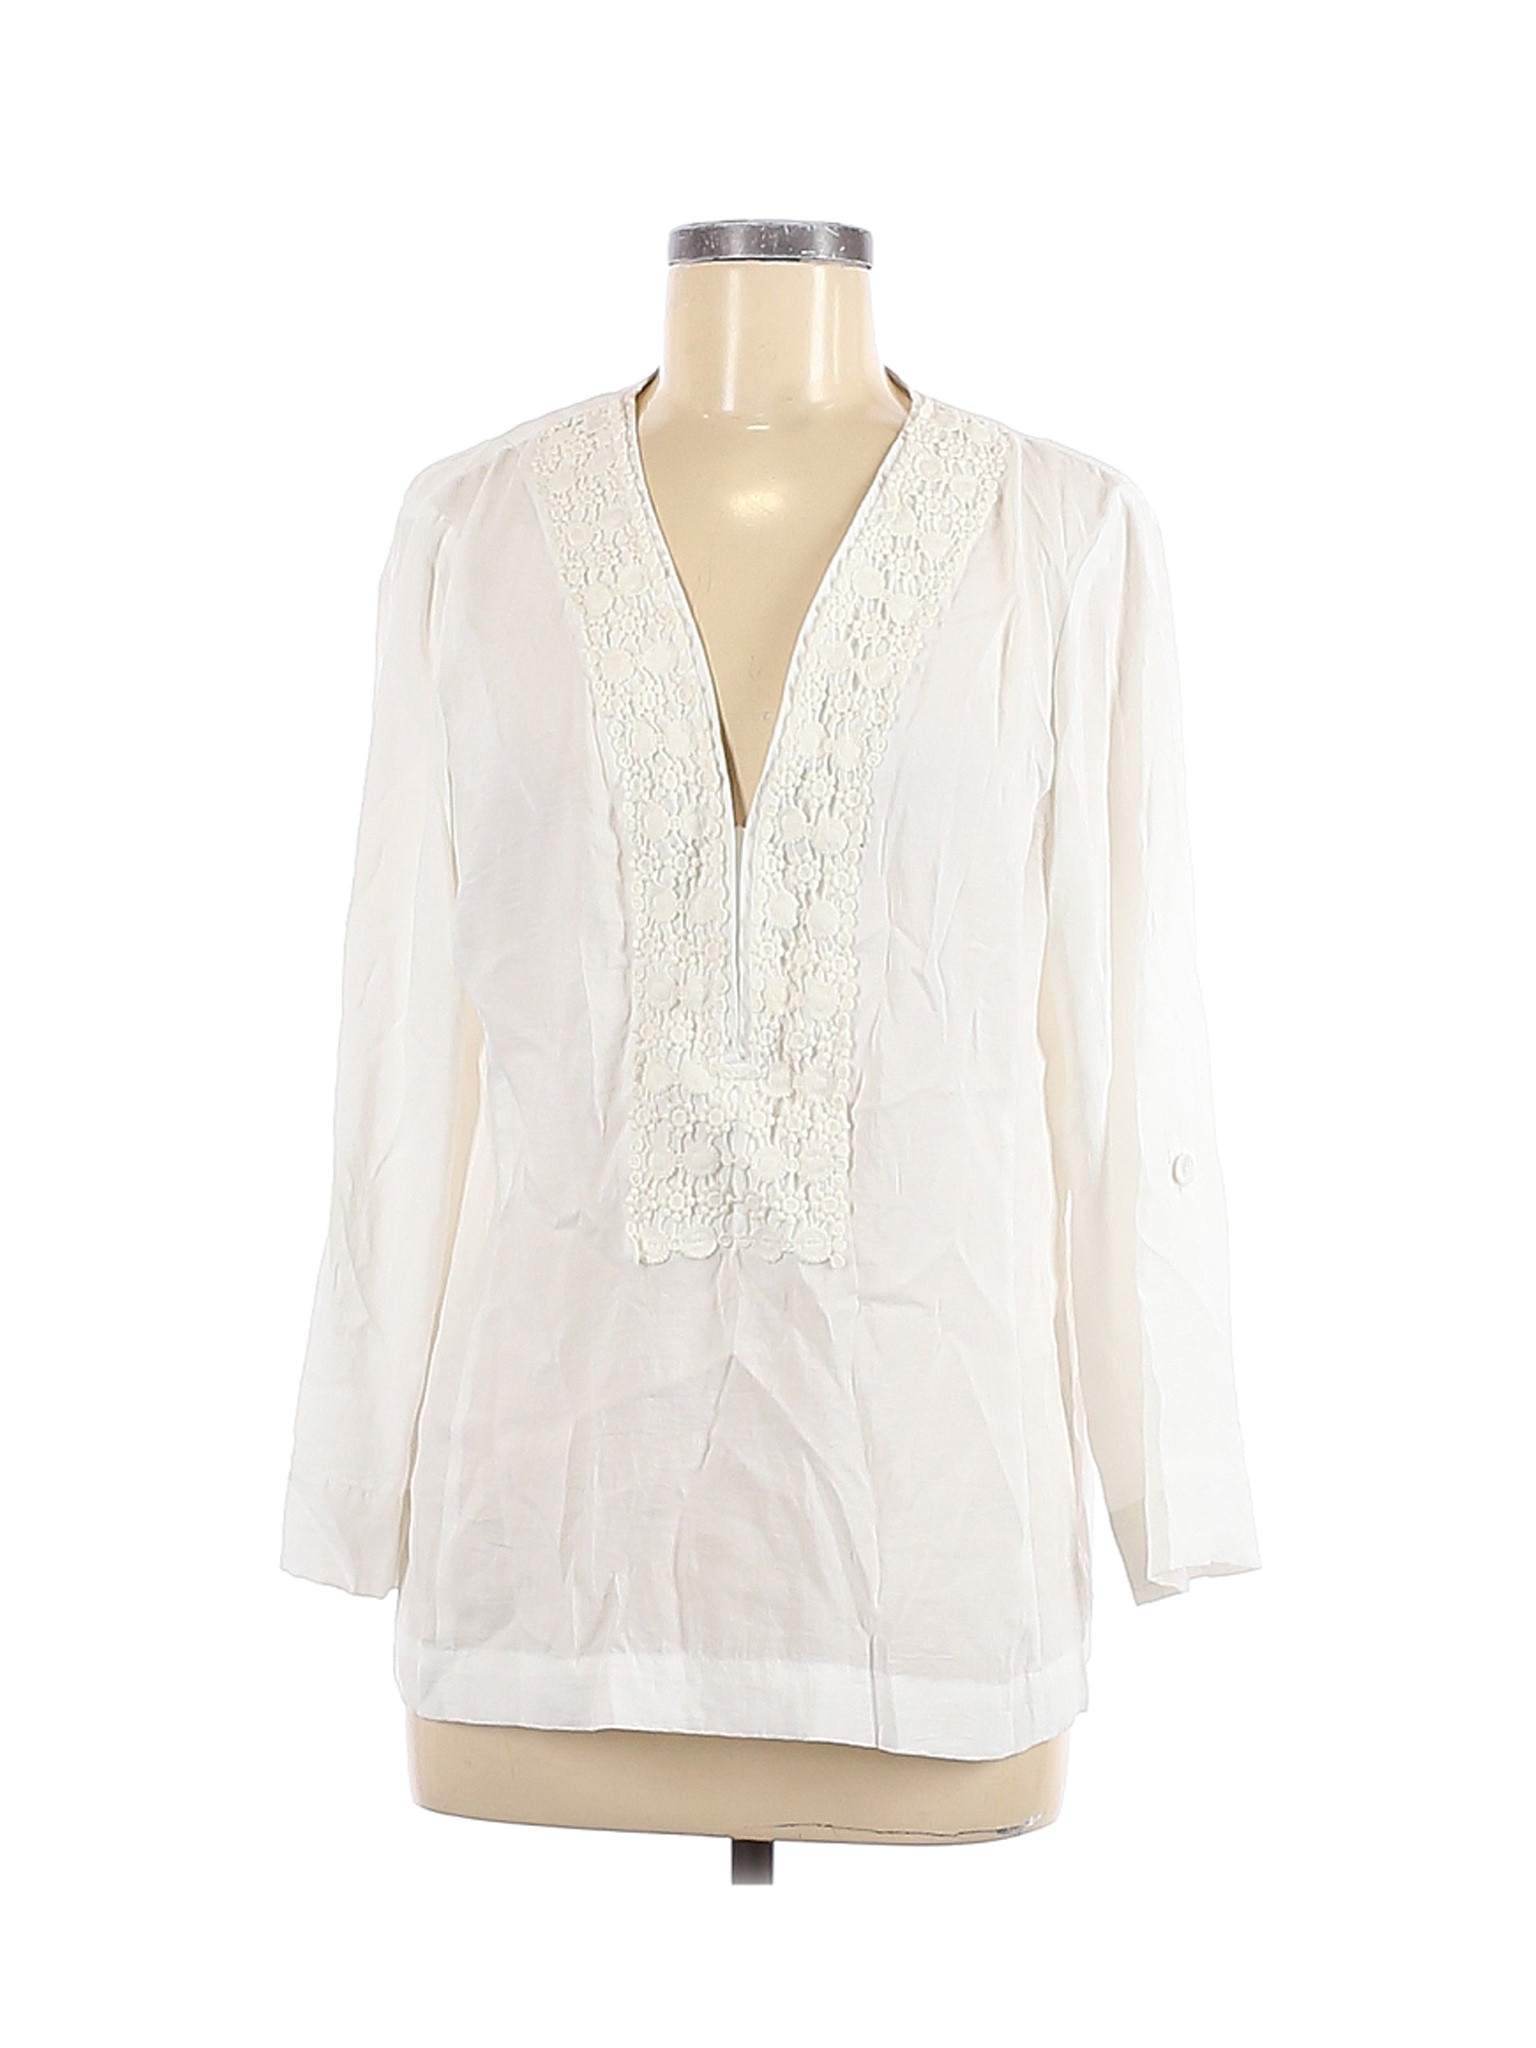 Nanette Lepore Women White Long Sleeve Blouse L | eBay